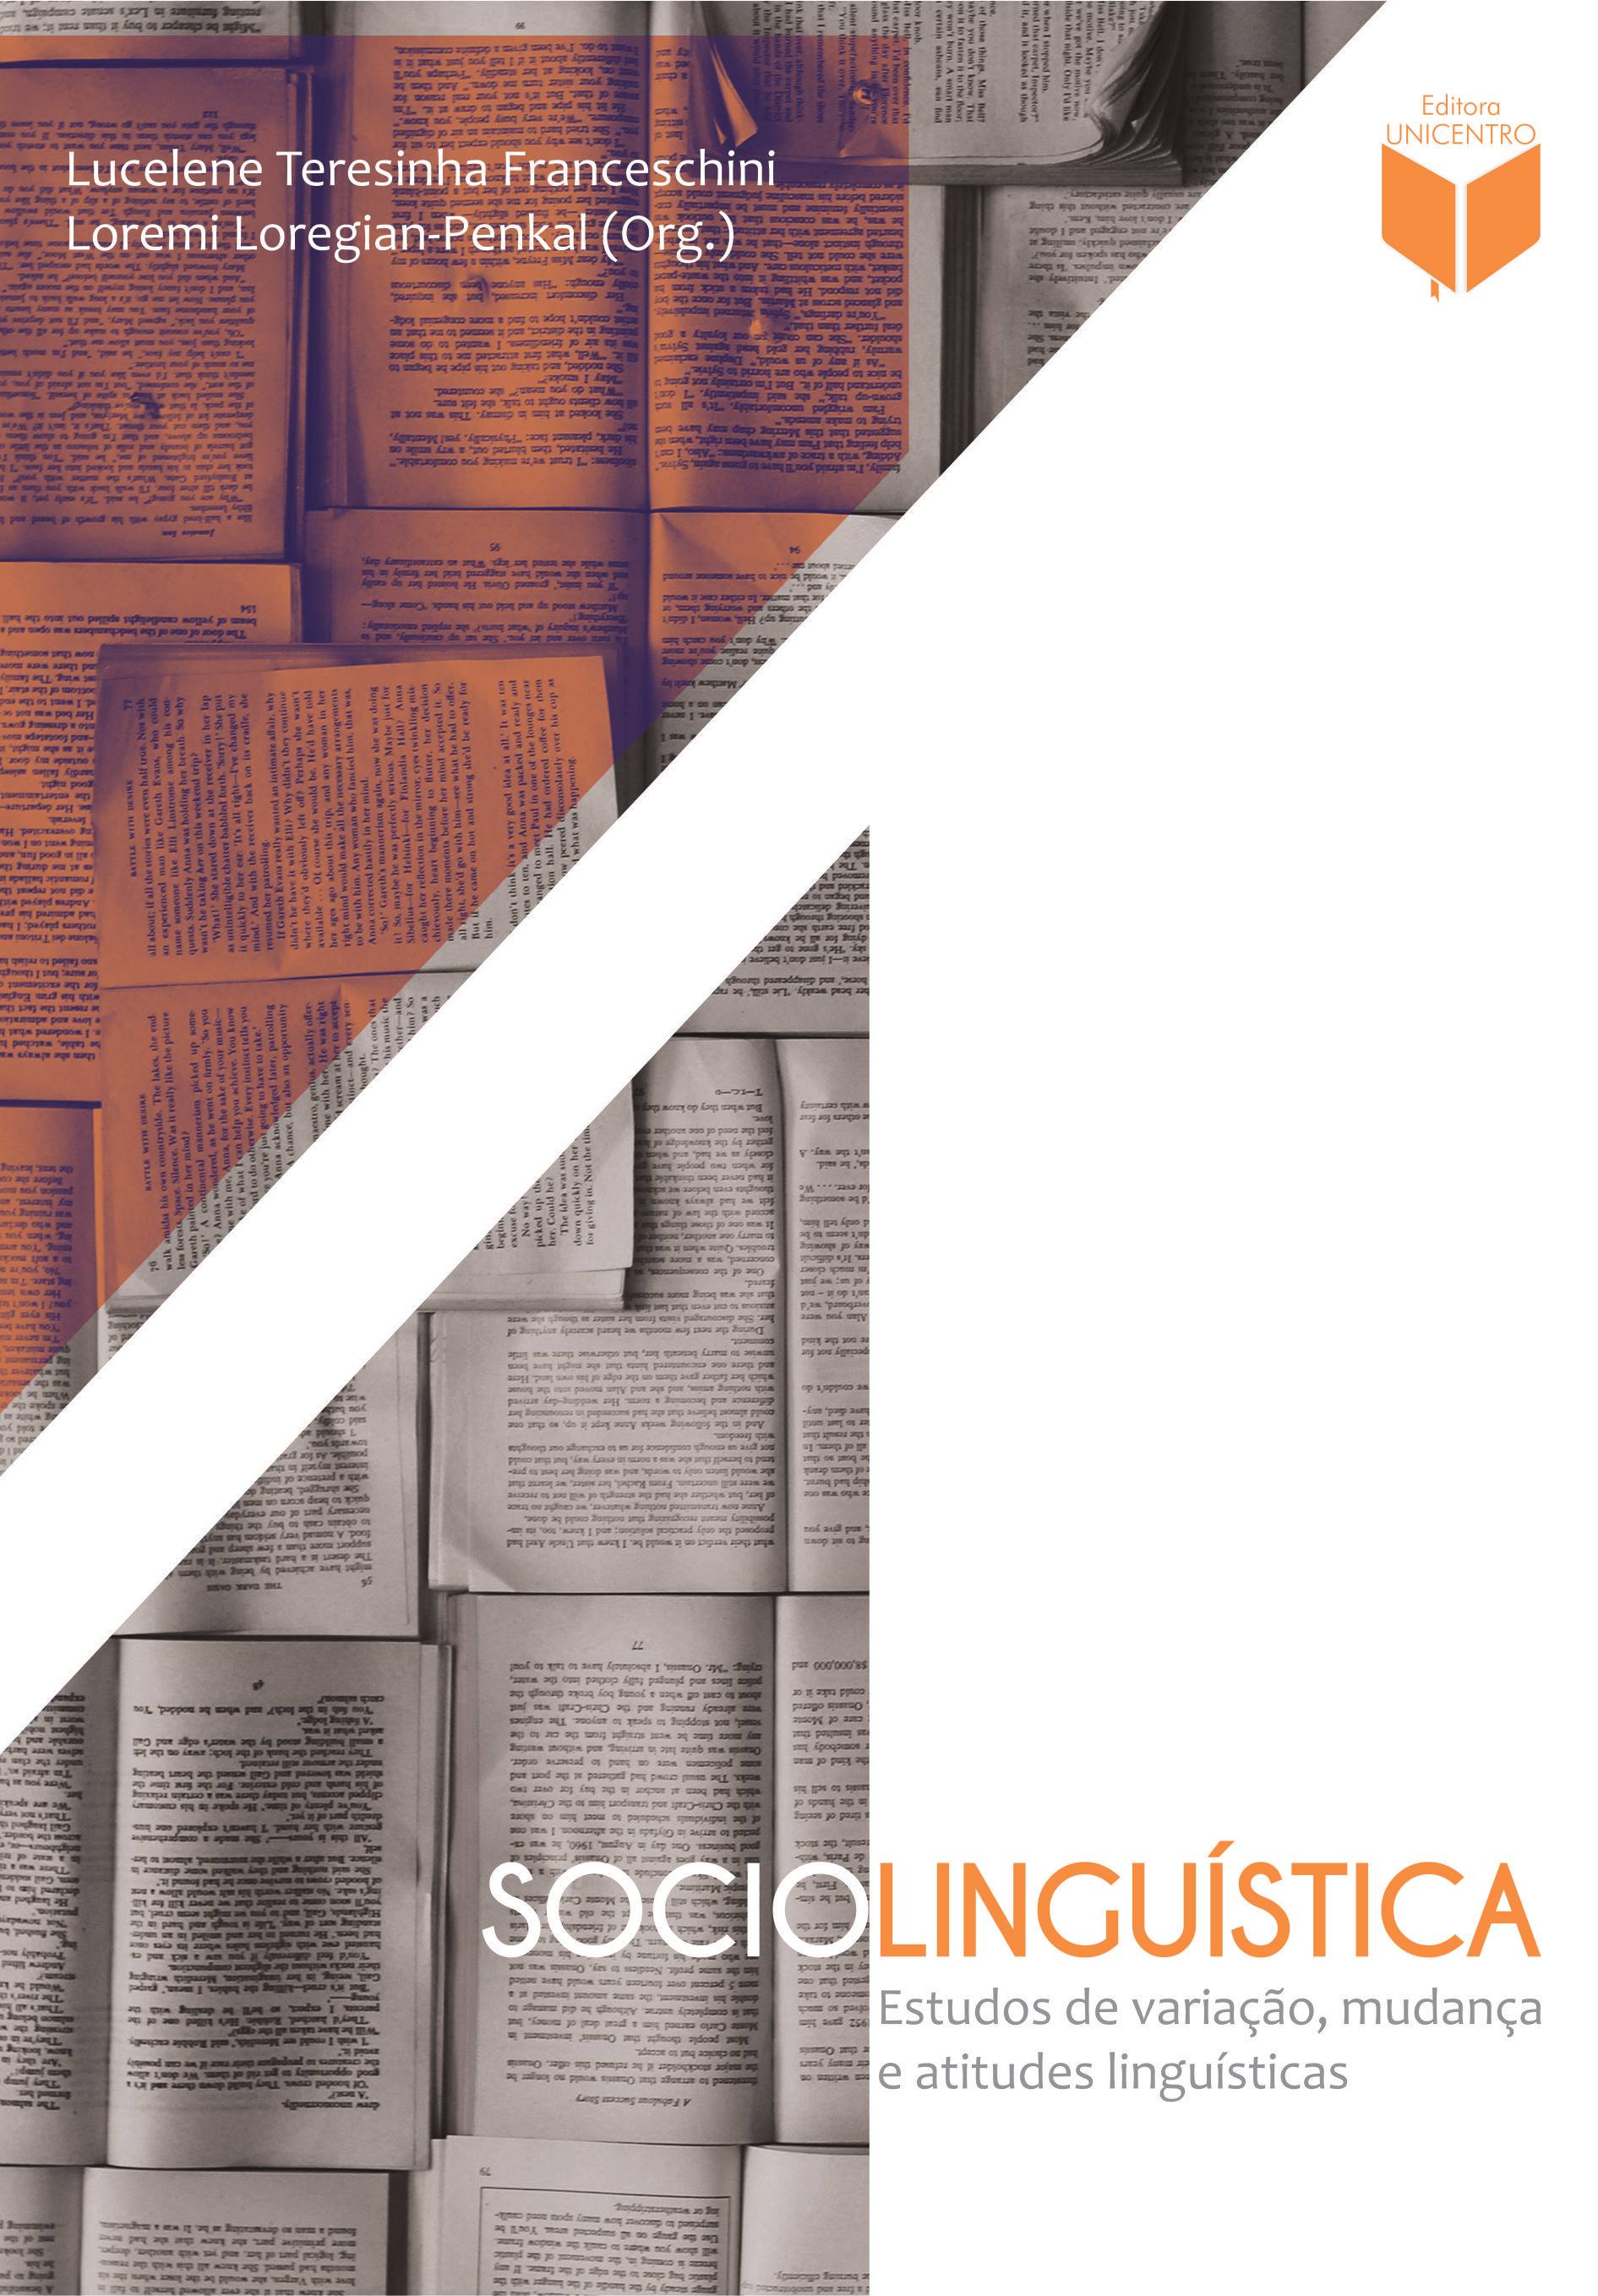 Sociolinguística: estudos de variação, mudança e atitudes linguísticas